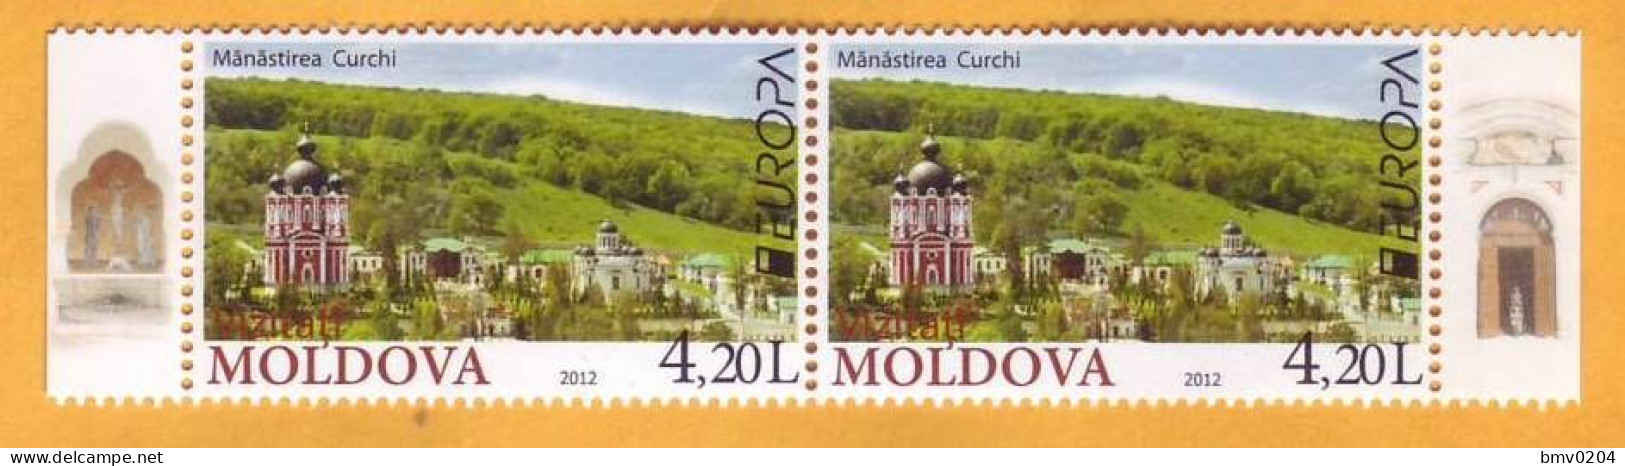 2012 Moldova Moldavie  Europa Cept  Visit Moldova. Tourism, Kurki, Christianity, 2v Mint - Moldavie